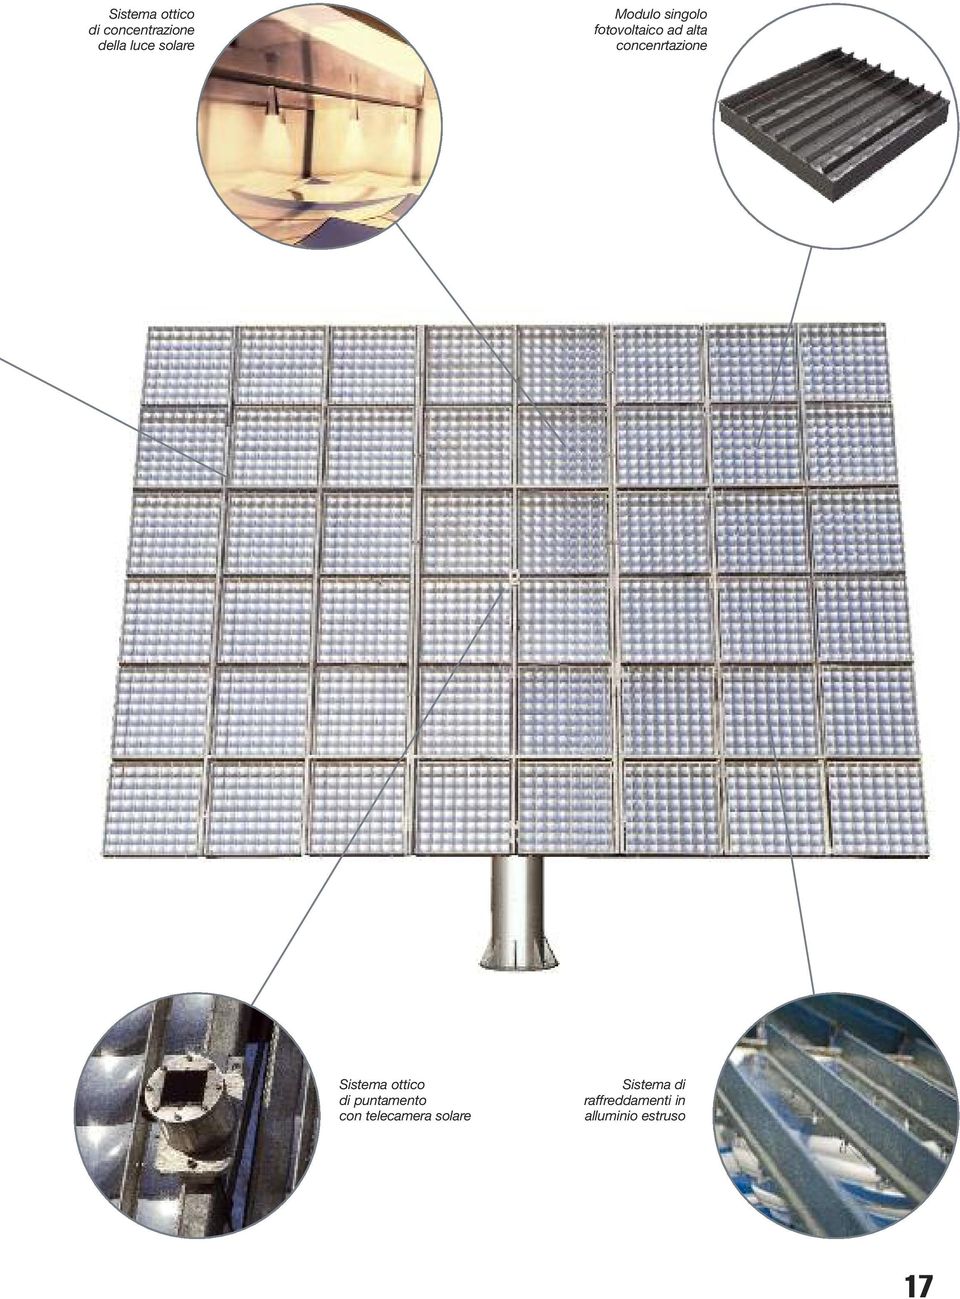 Sistema ottico di puntamento con telecamera solare